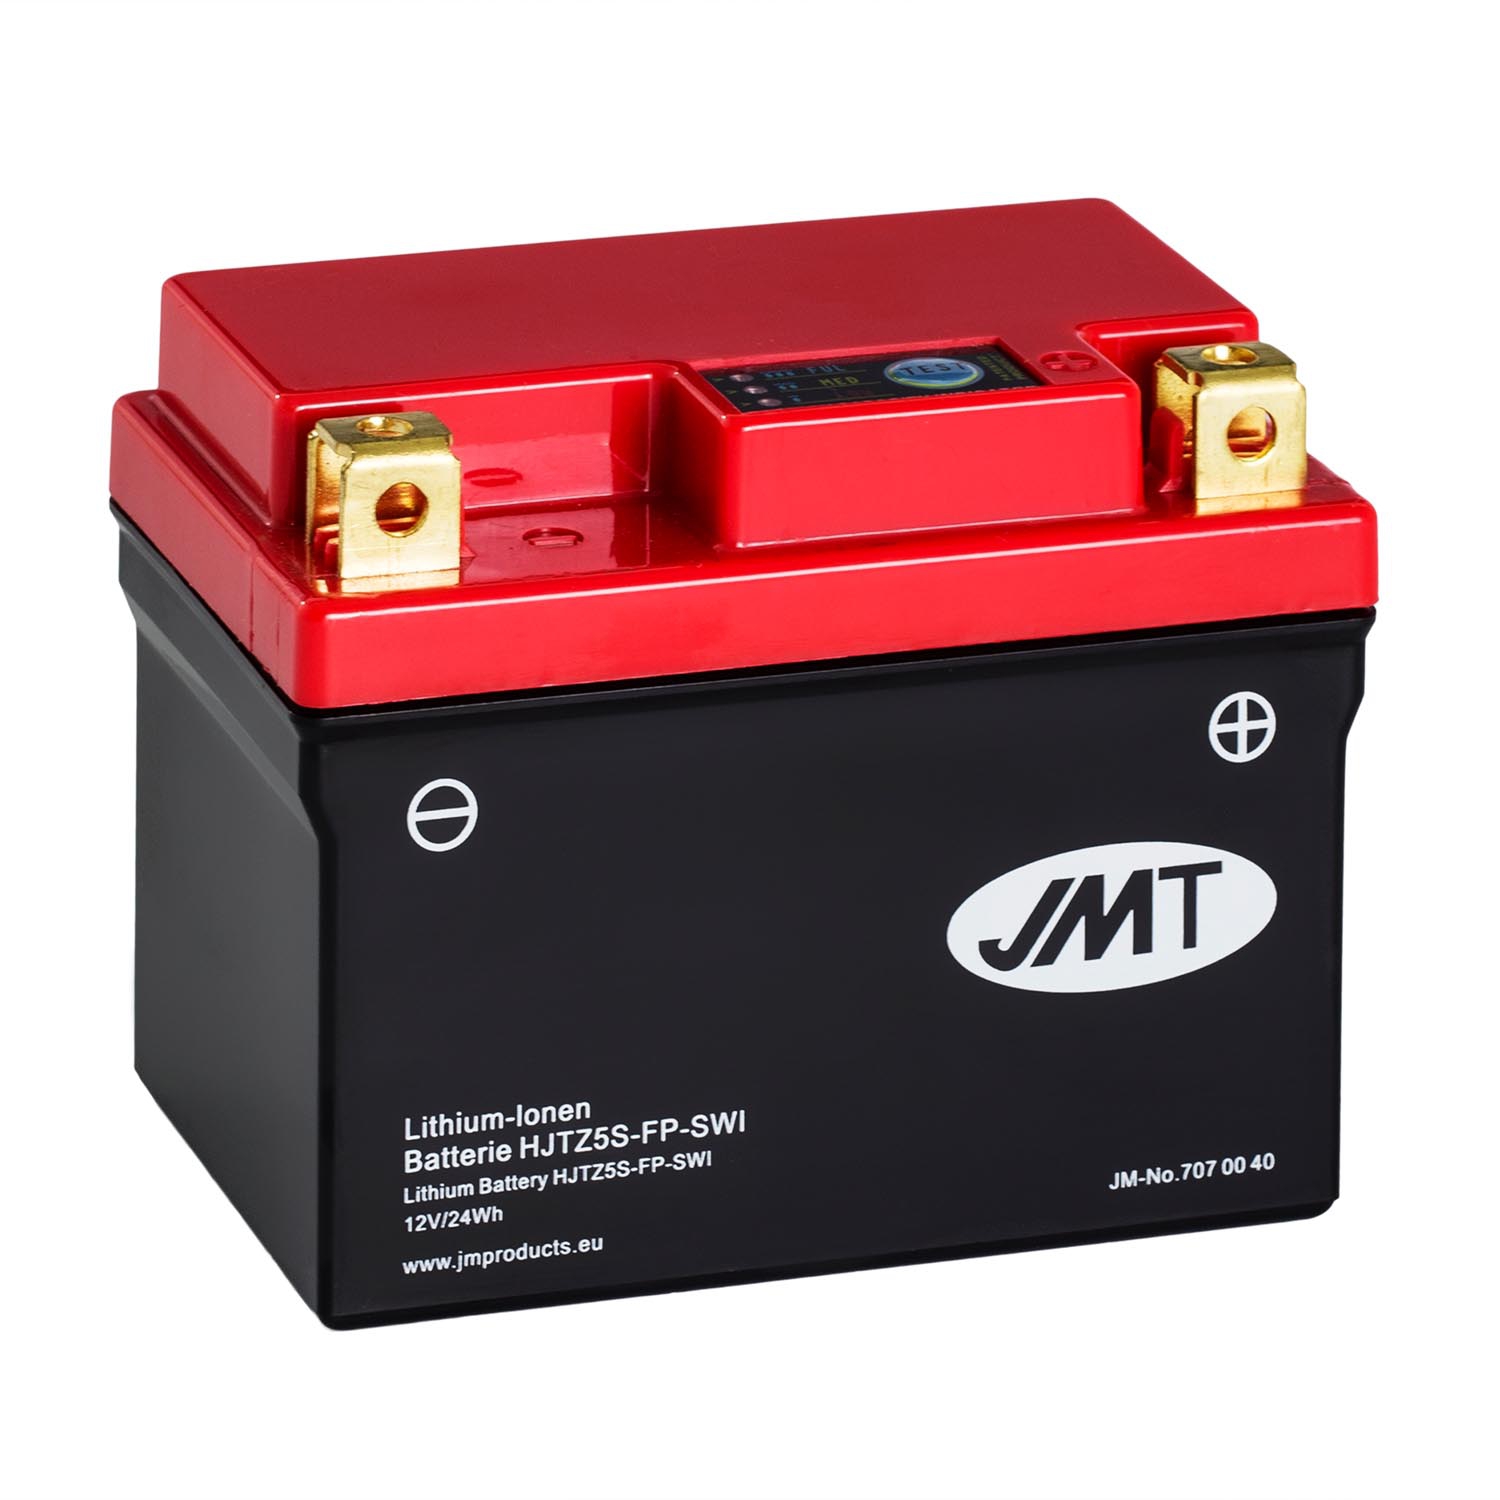 905g JMT Lithium Ionen Batterie YTZ10S BMW S 1000 RR extrem leicht neu